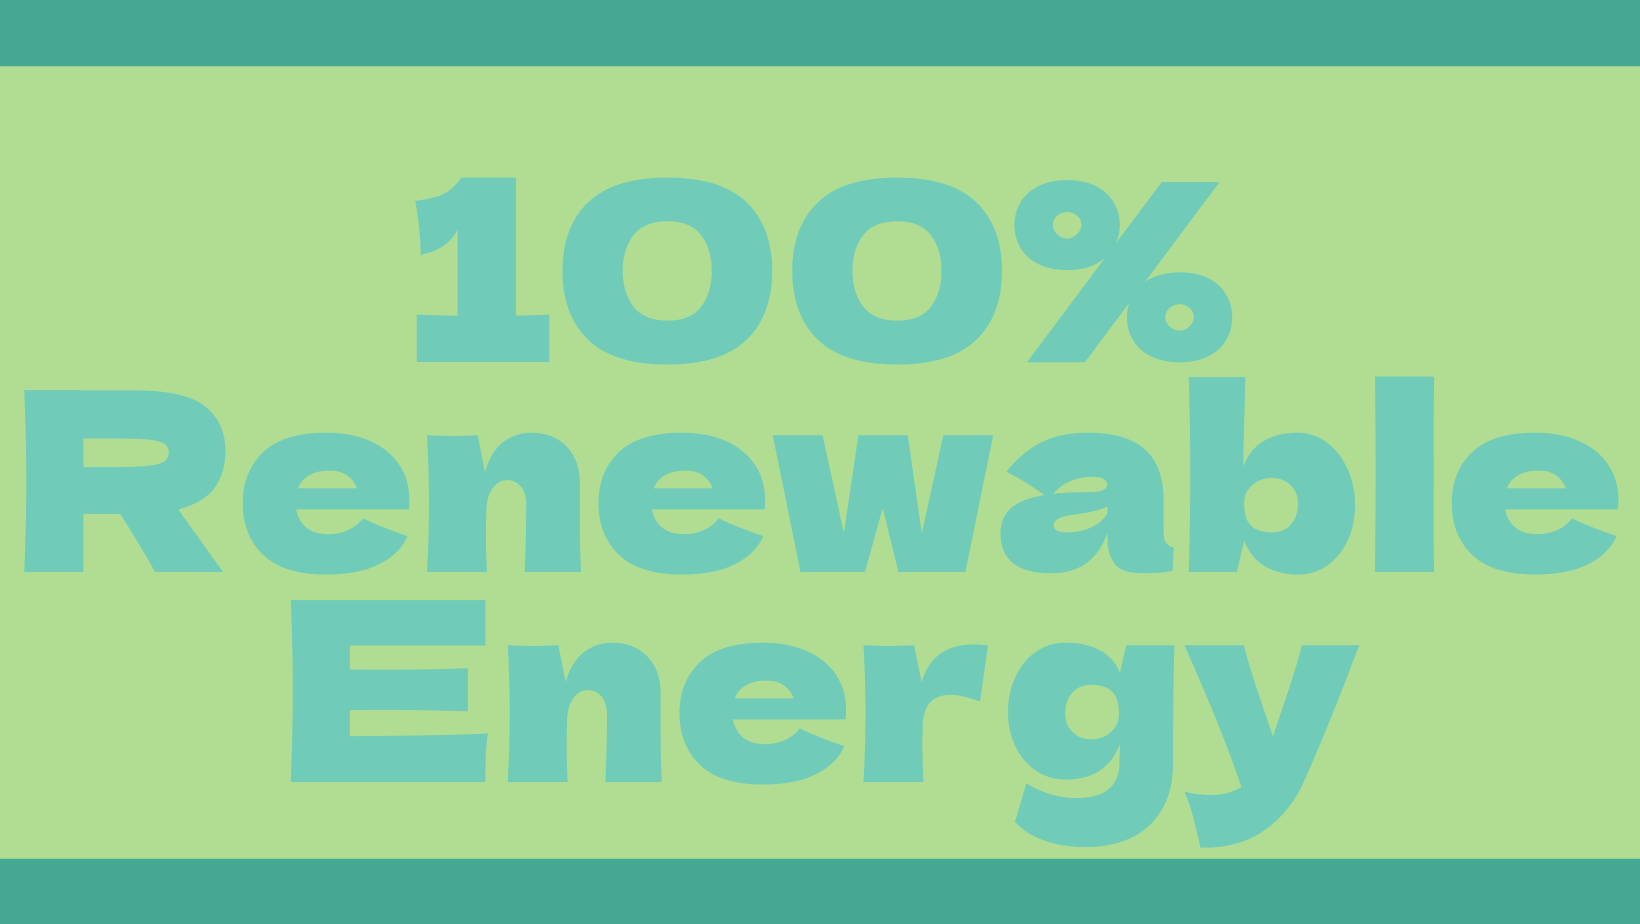 自然エネルギー100%を目指す理由